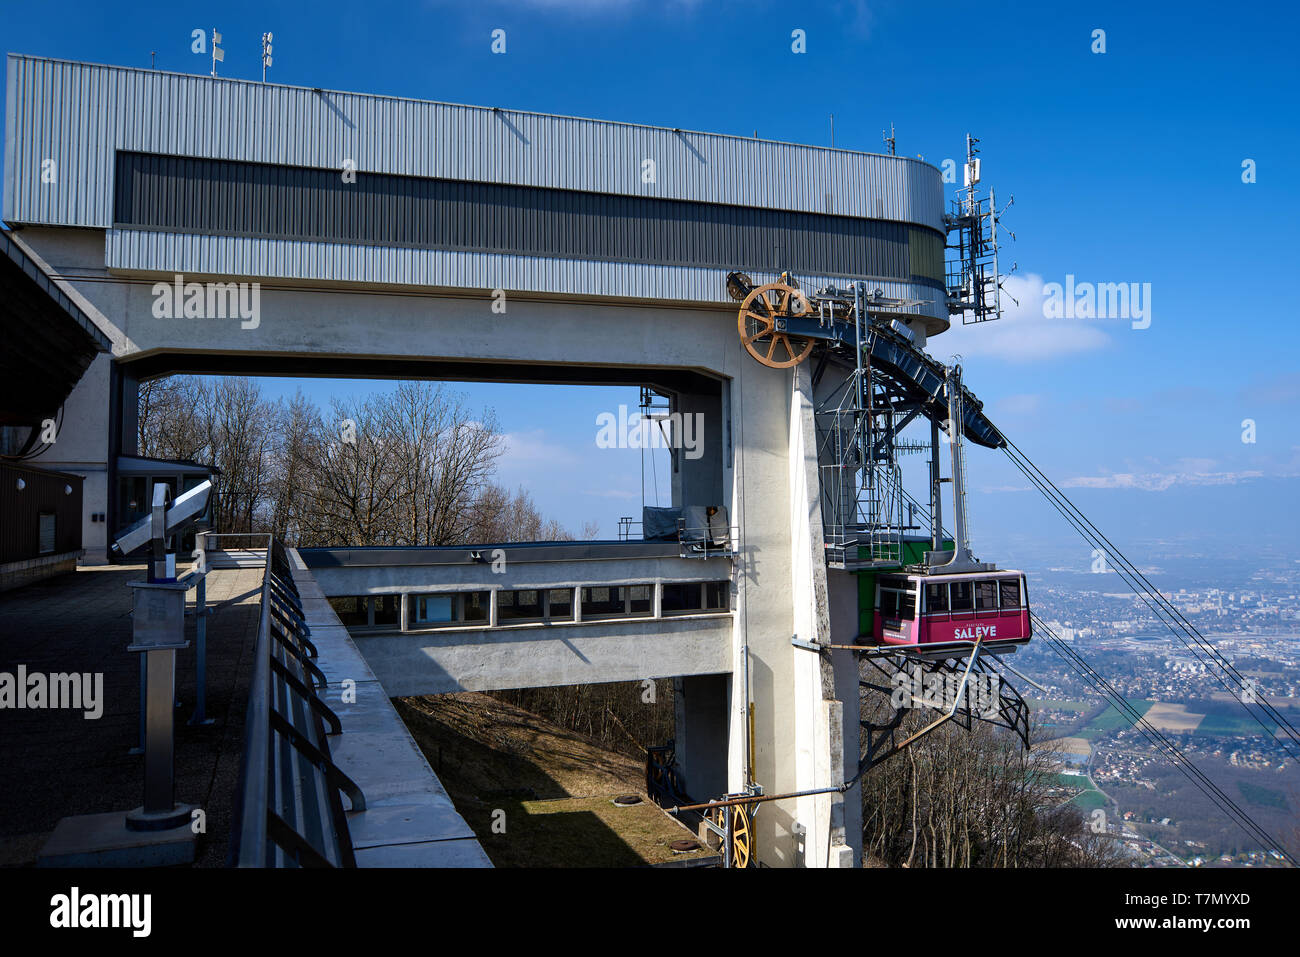 Monnetier-Mornex, Francia - 28 Marzo 2019: Medium Shot sul cavo auto della stazione a monte Salève nei pressi di Ginevra presso il francese-confine svizzero. Foto Stock